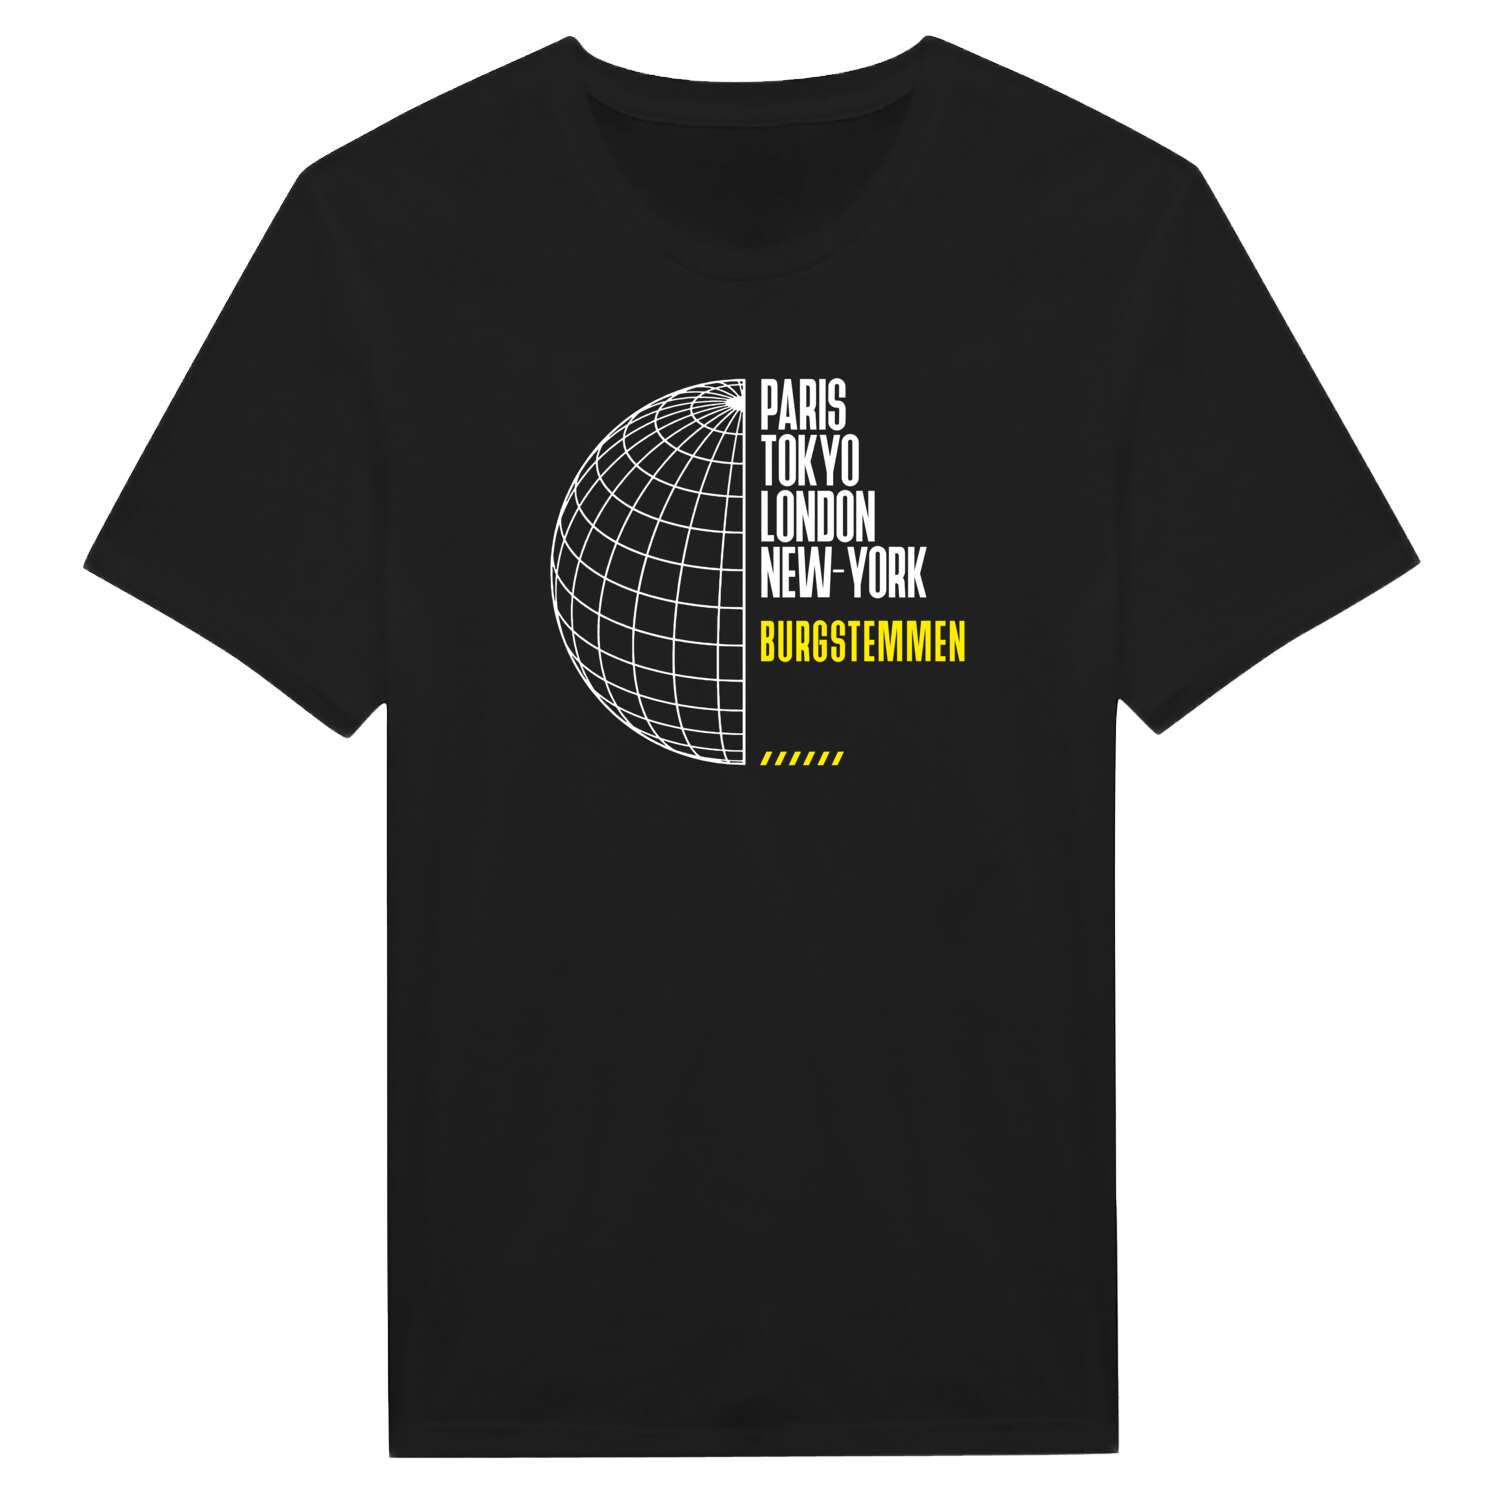 Burgstemmen T-Shirt »Paris Tokyo London«